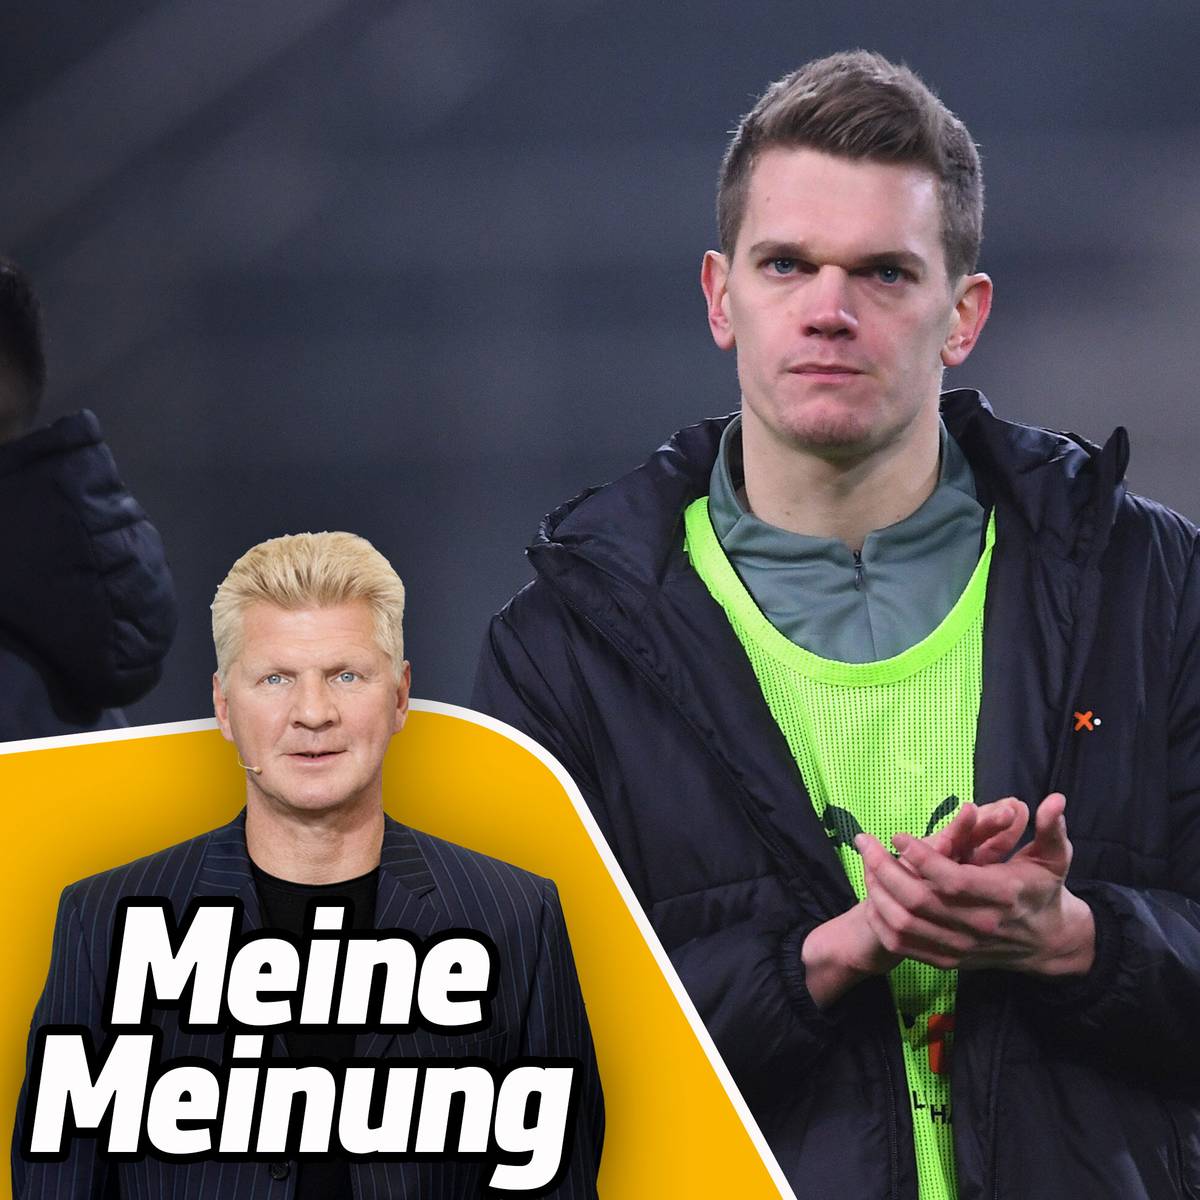 In seiner SPORT1-Kolumne äußert sich Stefan Effenberg kritisch zum Vorgehen von Erling Haaland. Das Verhalten von Borussia Mönchengladbach im Fall Matthias Ginter gefällt ihm zudem überhaupt nicht.